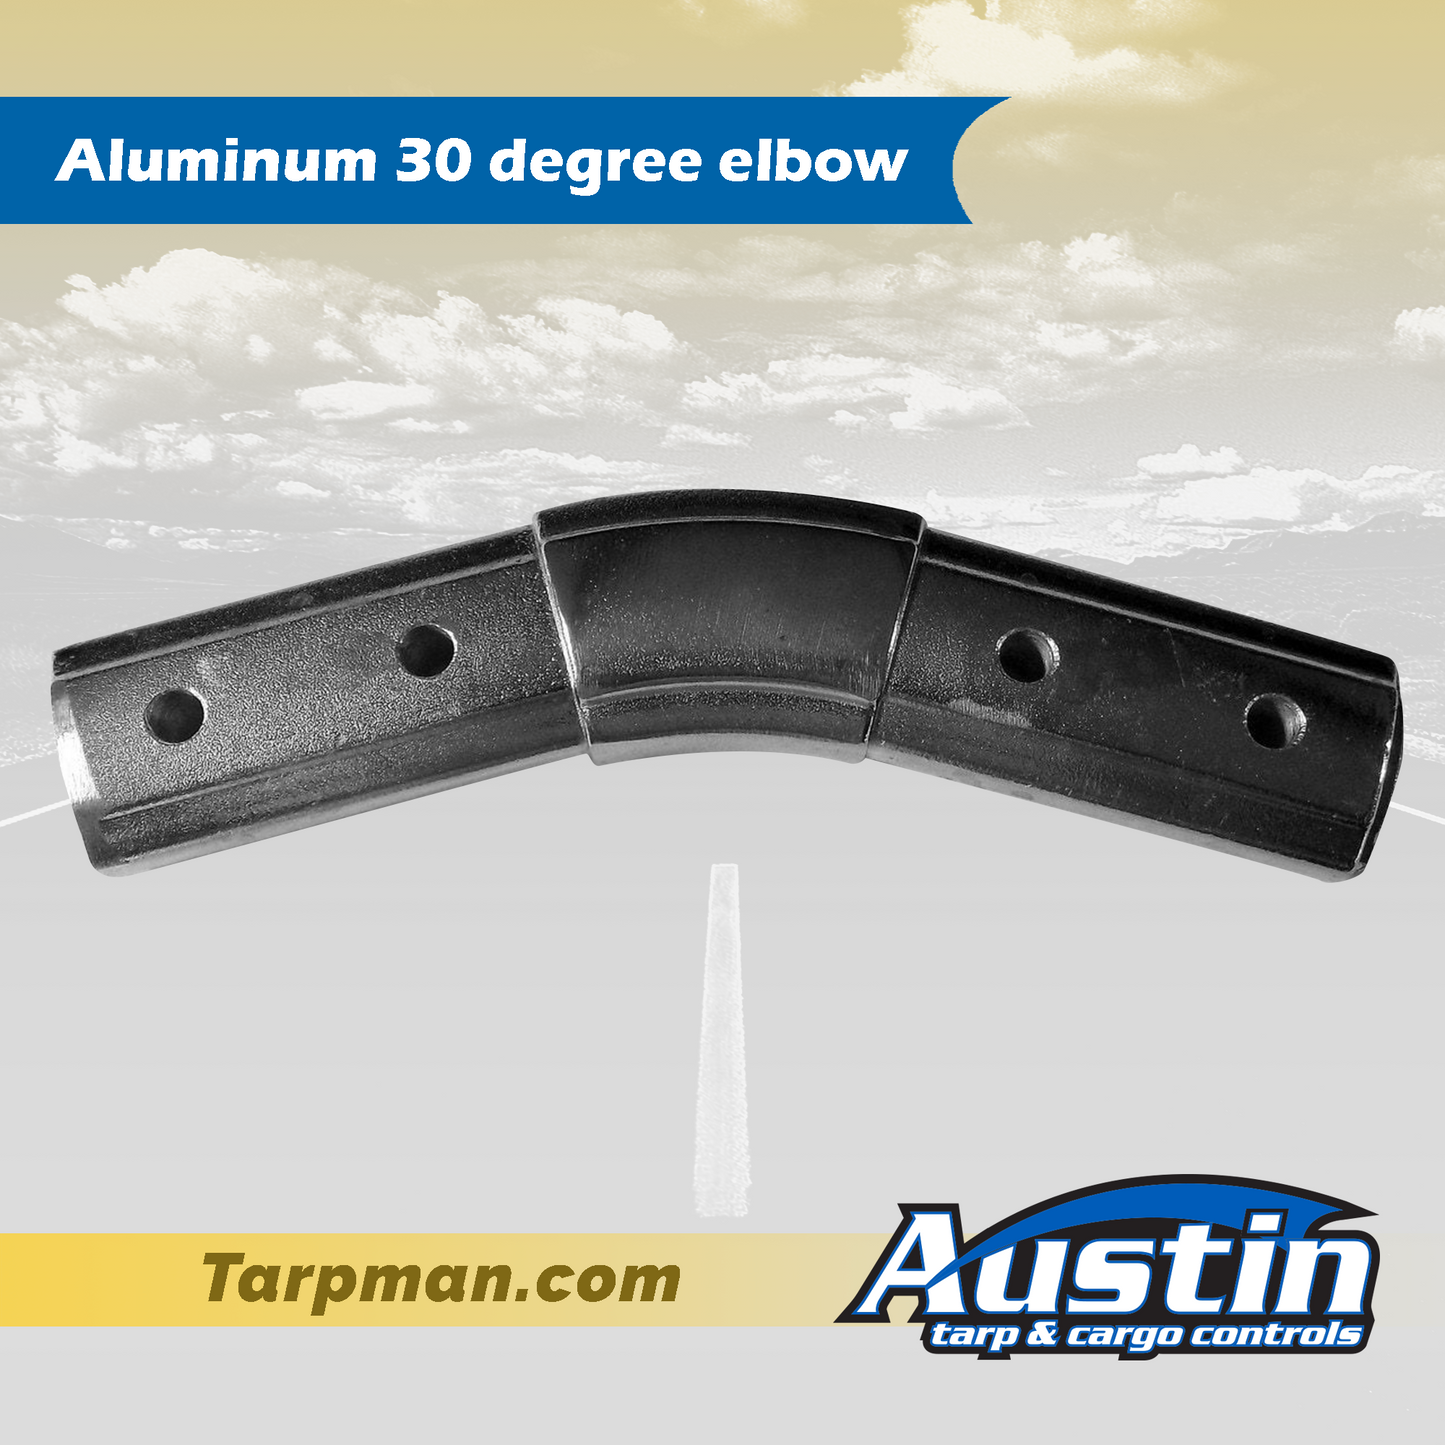 Aluminum 30 degree elbow